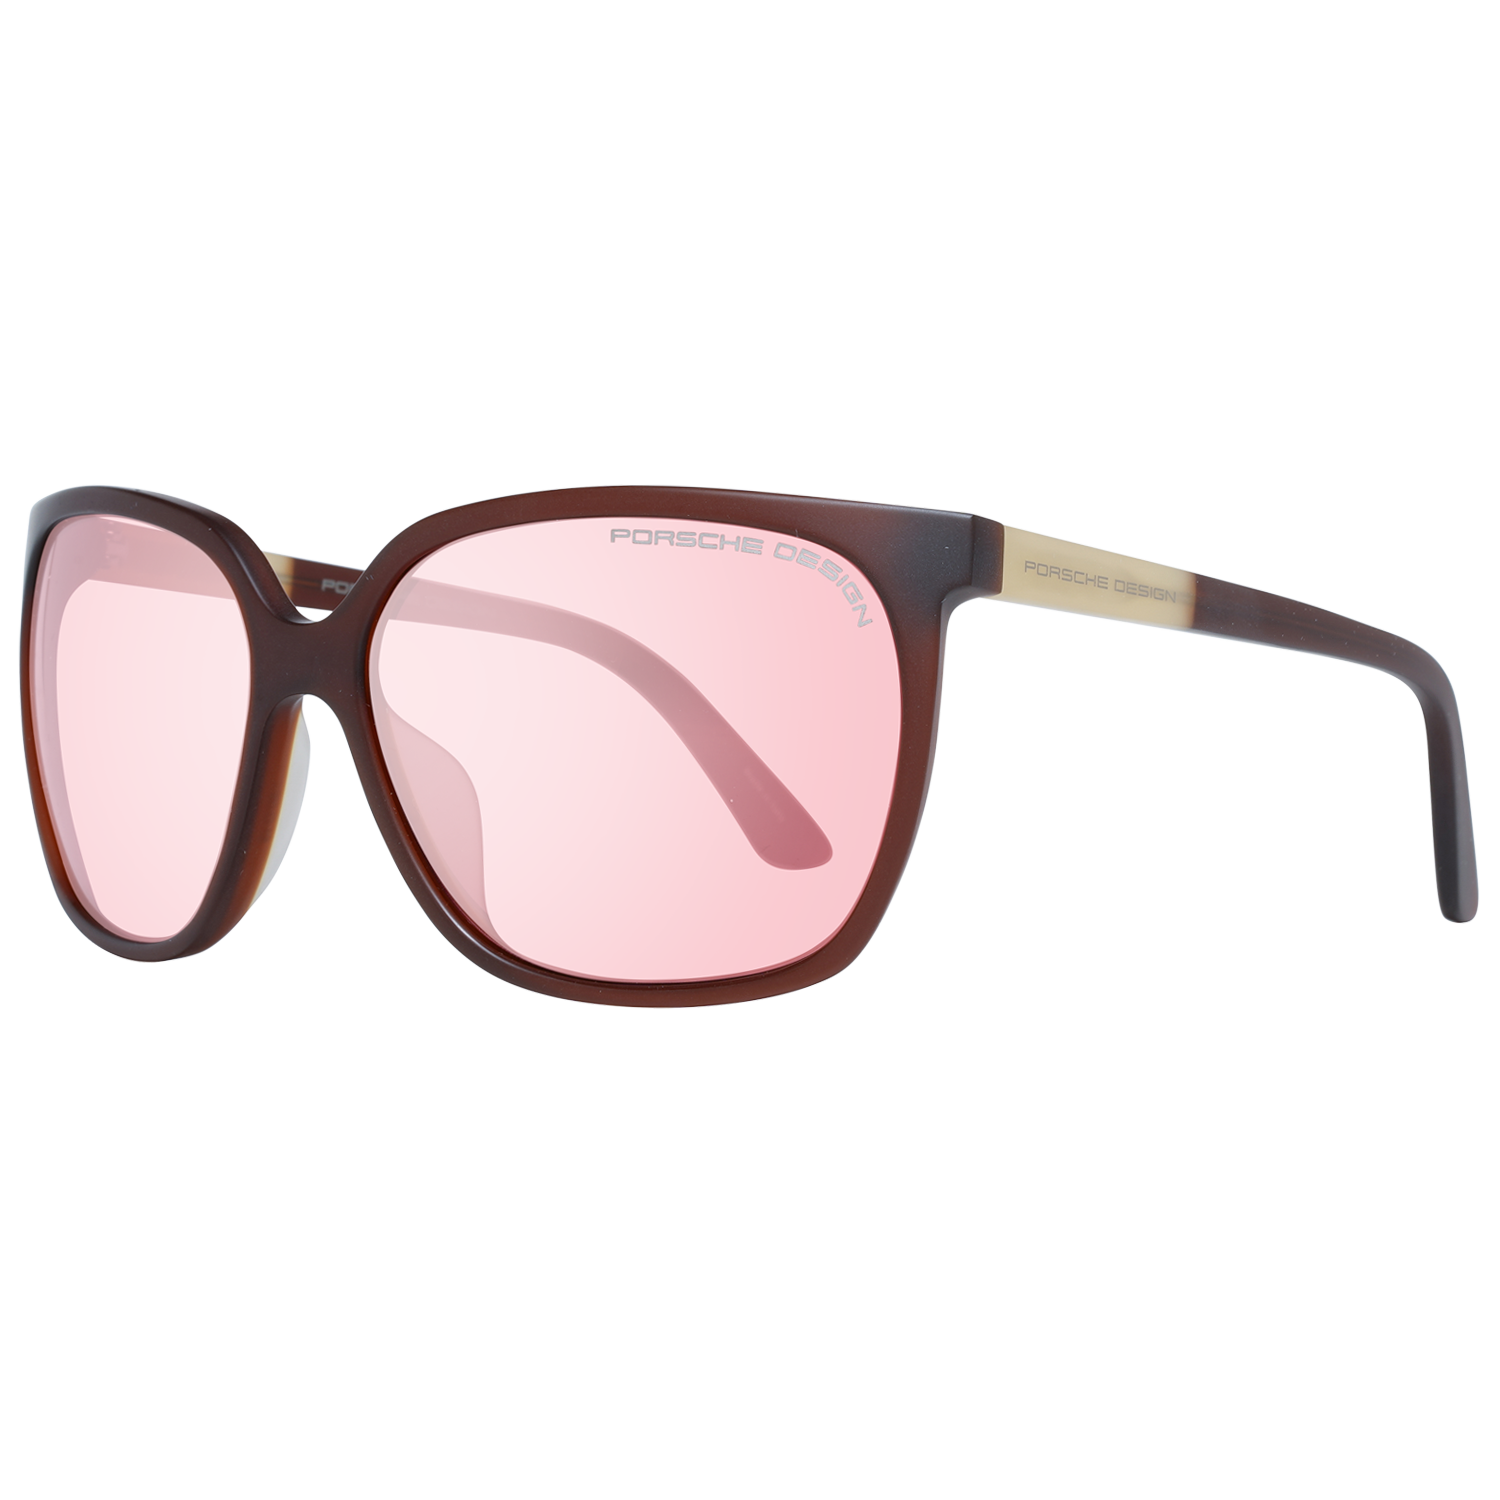 Porsche Design Sunglasses Women Square Mirrored P8589 B 60